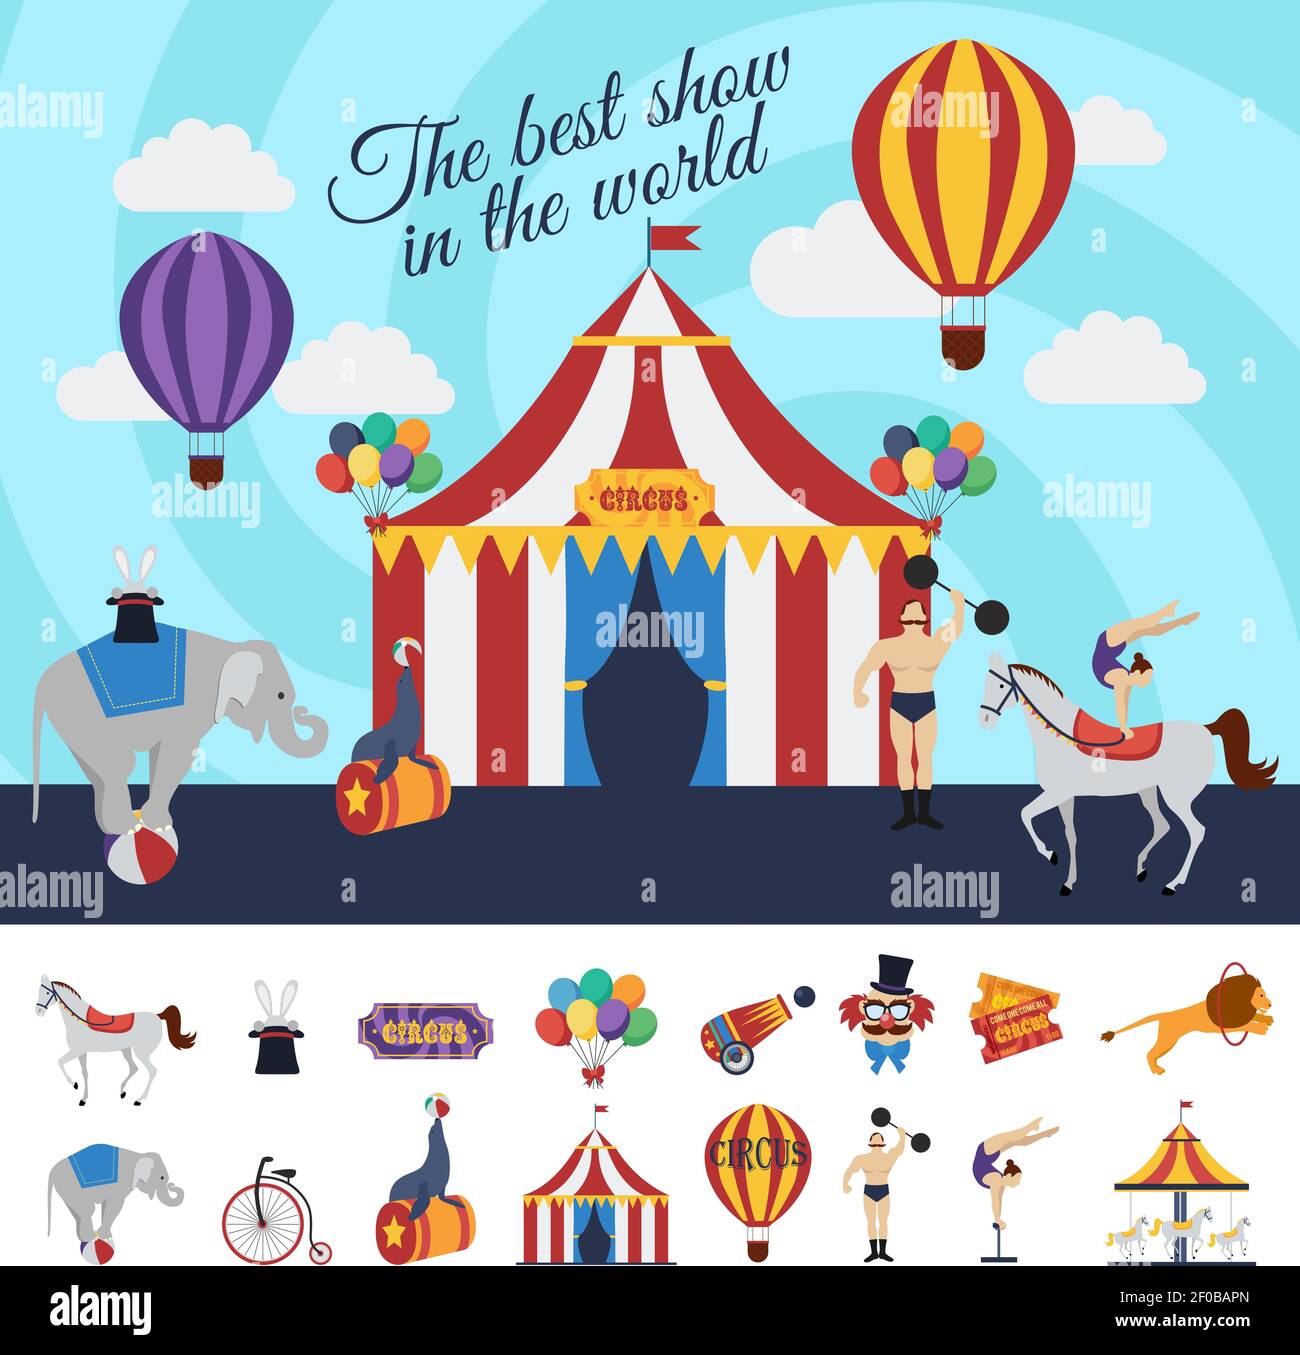 Concept de spectacle de cirque avec le meilleur spectacle dans le design du monde et collection d'éléments décoratifs illustration vectorielle isolée Illustration de Vecteur